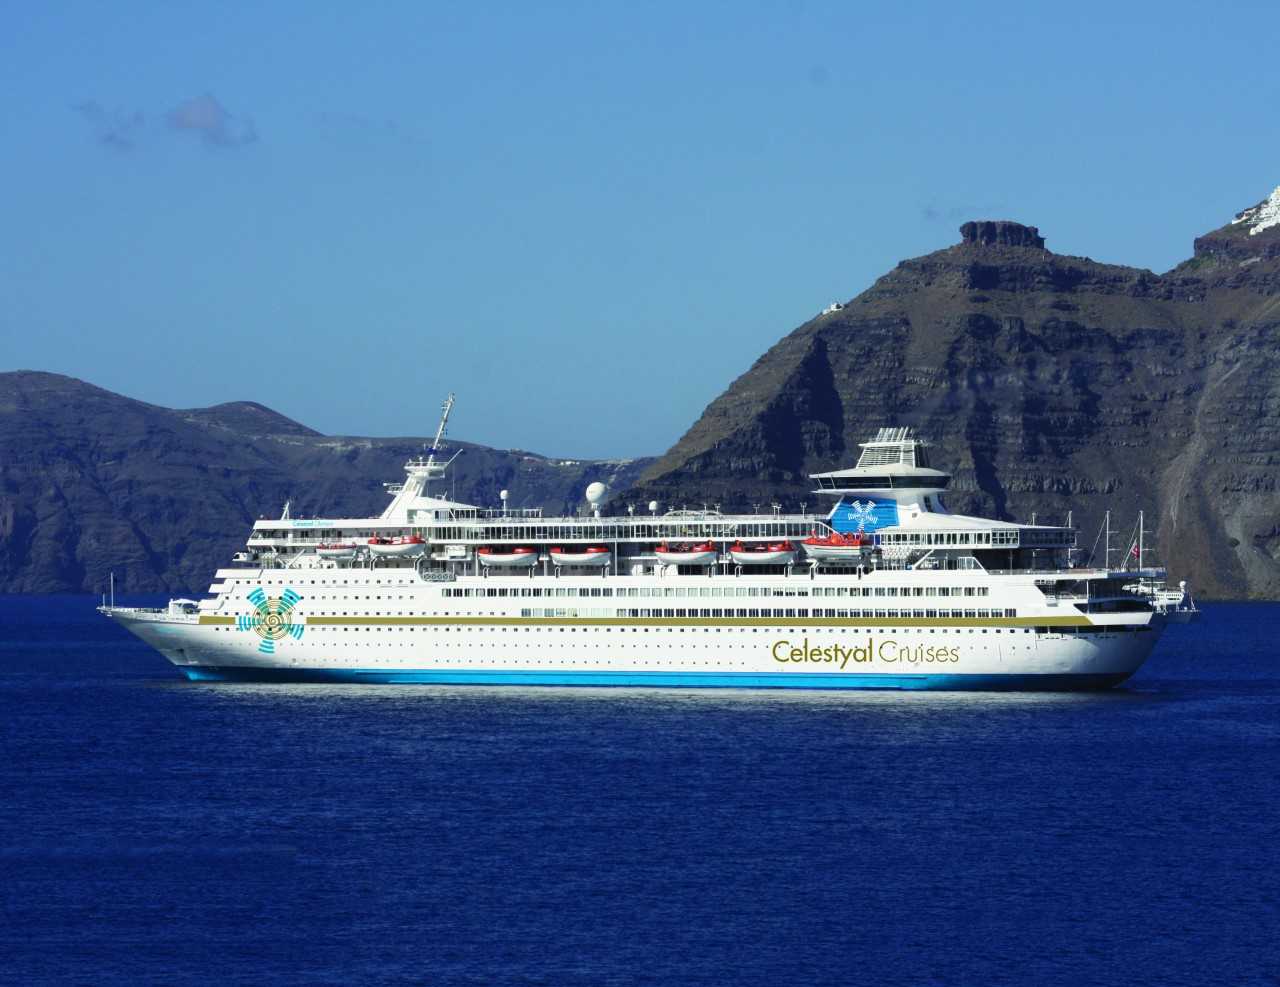 Ριζικές αλλαγές για ανάκαμψη στην κρουαζιέρα λέει ο διευθύνων σύμβουλος της Celestyal Cruises